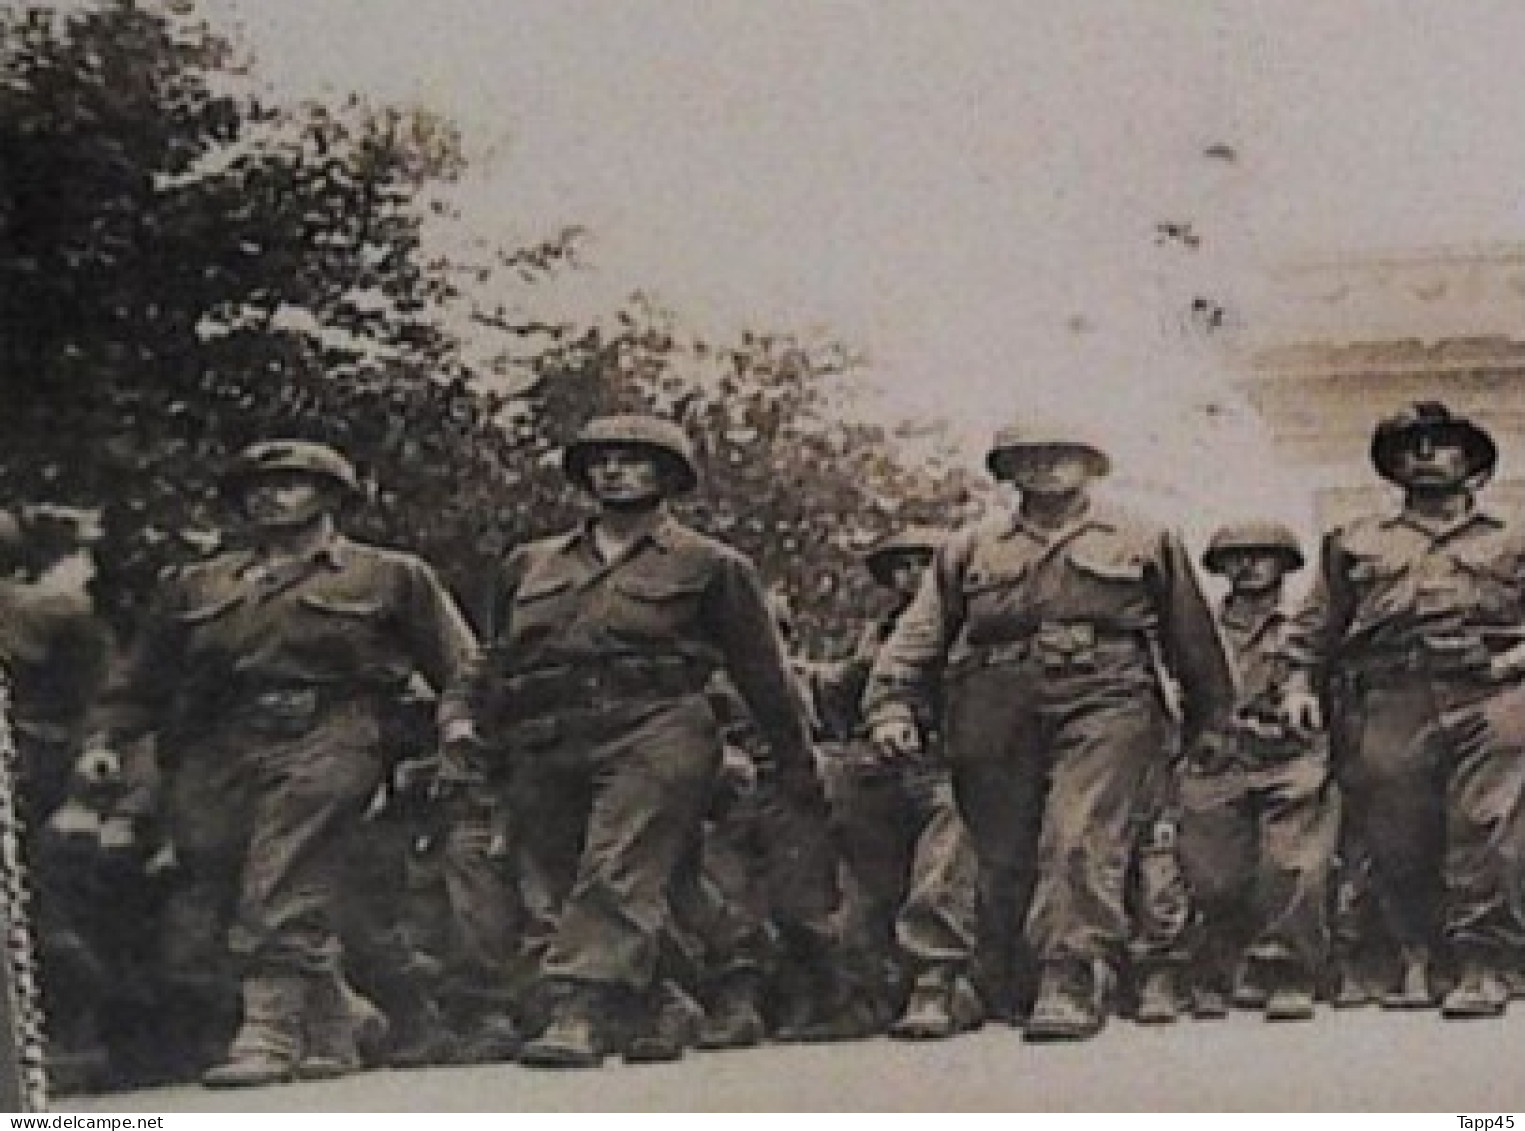 Livret de 20 Cartes Photos sur la libération de Paris 19/26/Août 1944 >Peut commun> Voir aussi Militaria 34436 >Tv 8 Mil